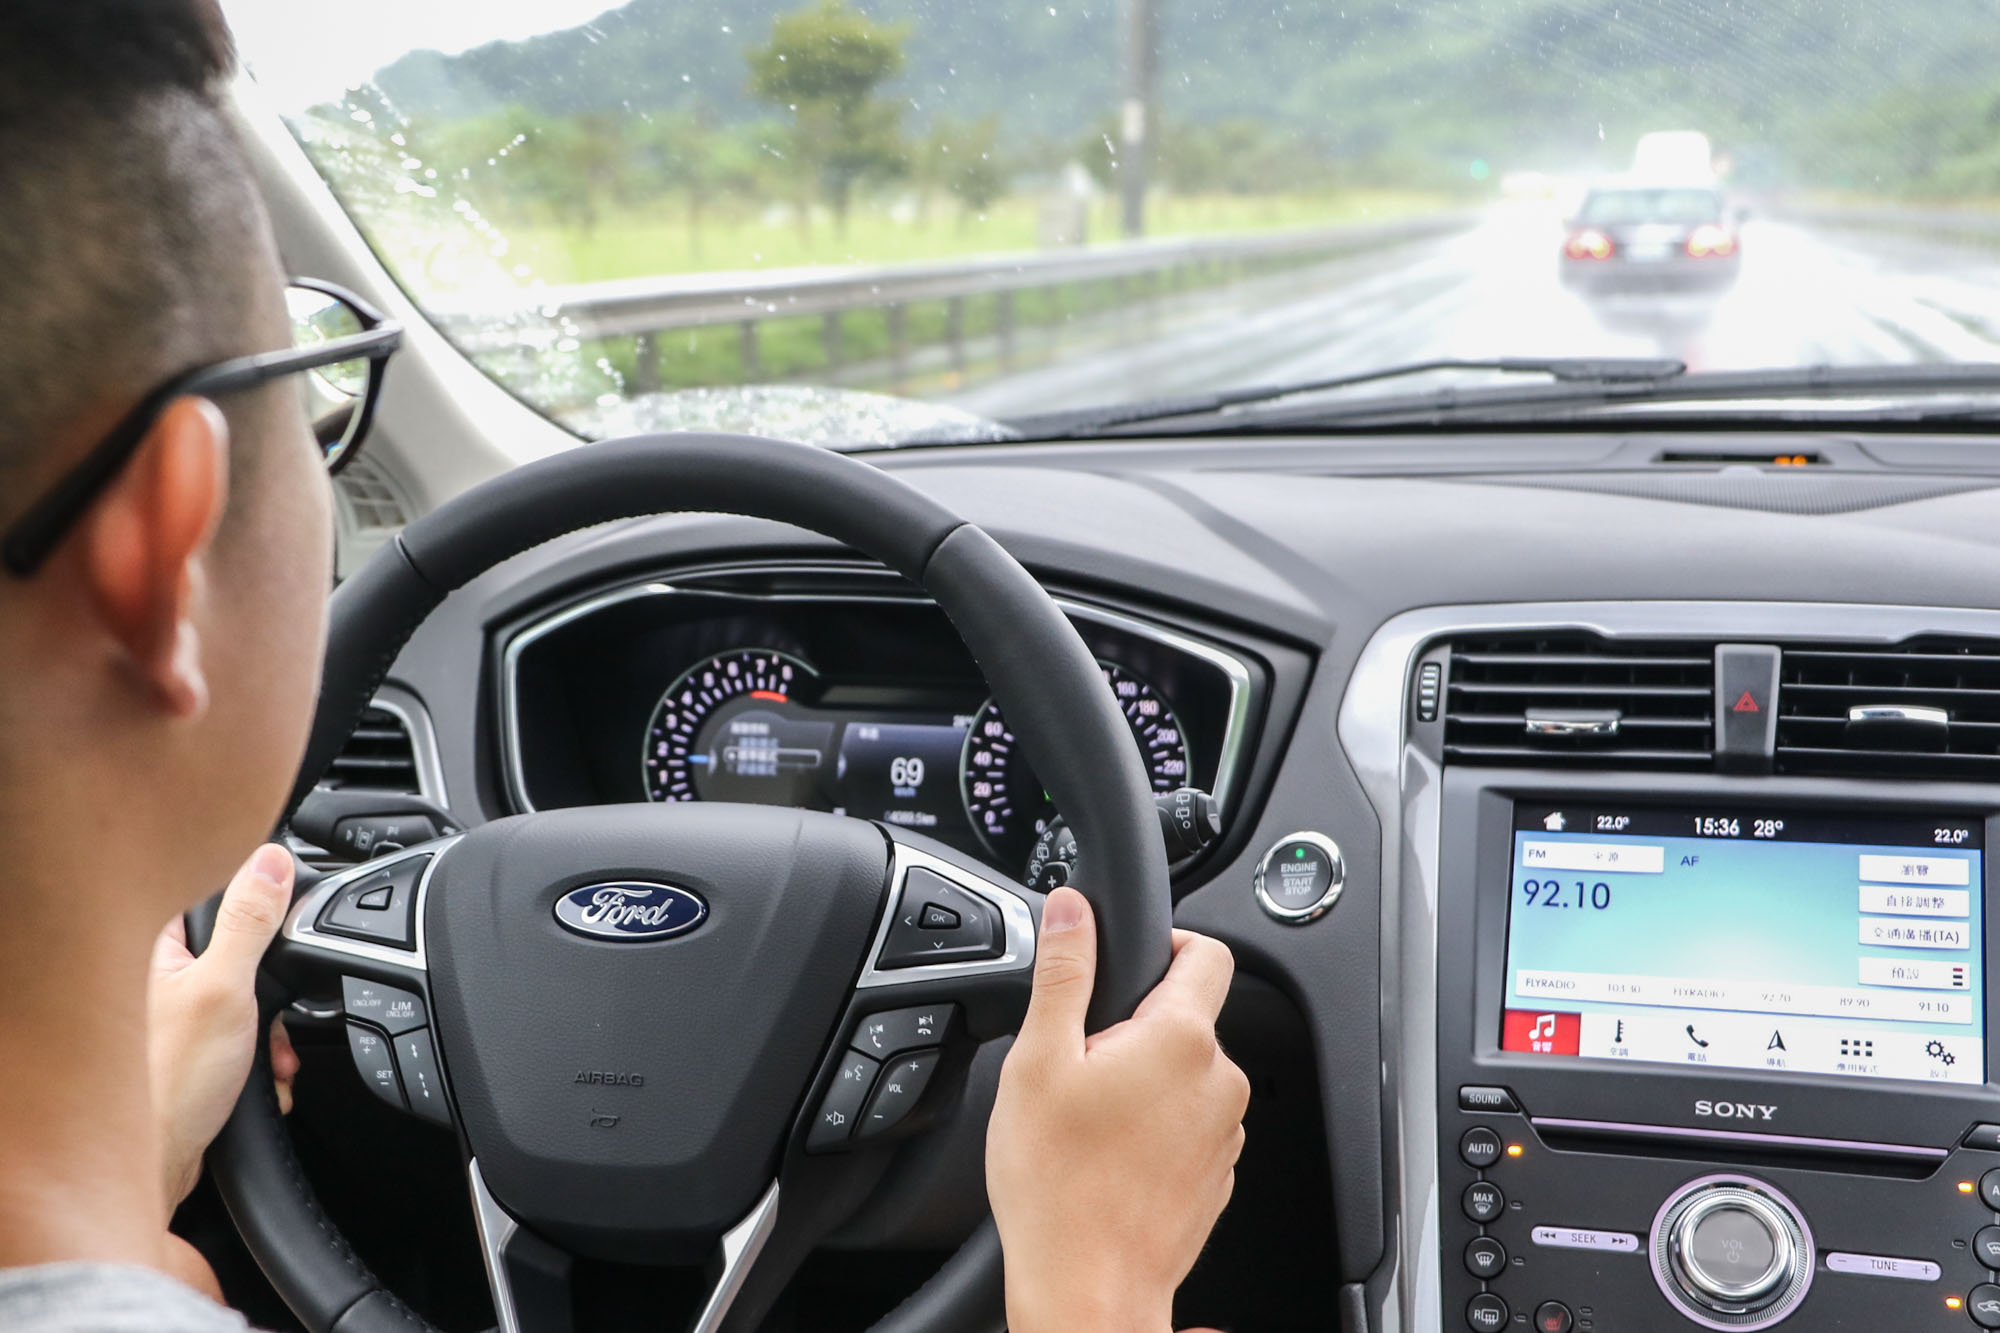 全新 Mondeo Wagon 主打 Co-Pilot360™ Technology 安全輔助科技，包含 ACC 主動式定速巡航系統、LDW 車道偏移警示系統、LKA 車道偏移輔助系統、PCA前向碰撞預警系統、BLIS®視覺盲點偵測系統等豐富安全功能。